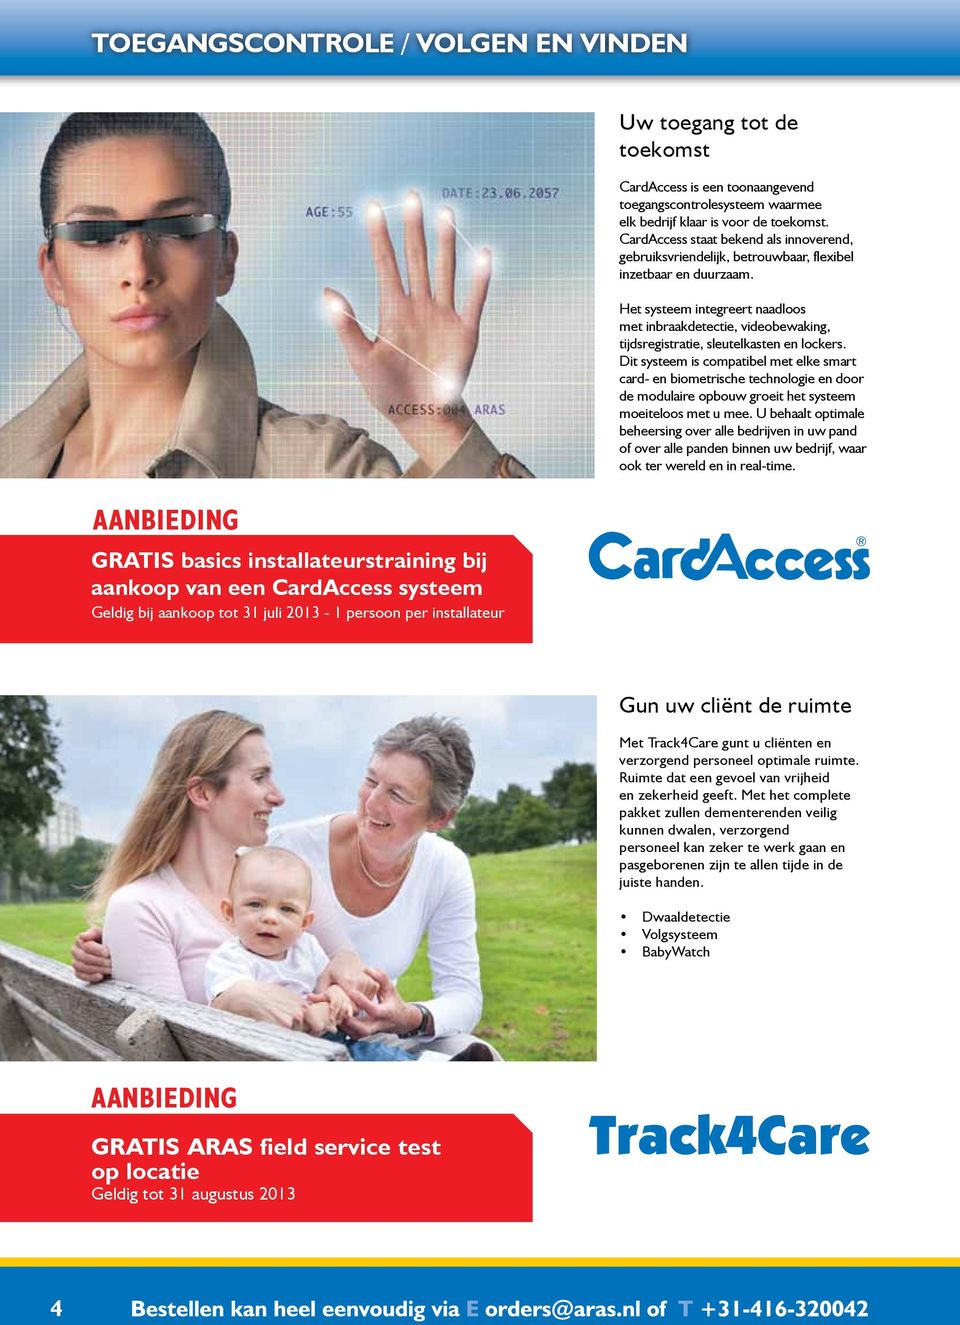 CardAccess staat bekend als innoverend, gebruiksvriendelijk, betrouwbaar, flexibel inzetbaar en duurzaam.